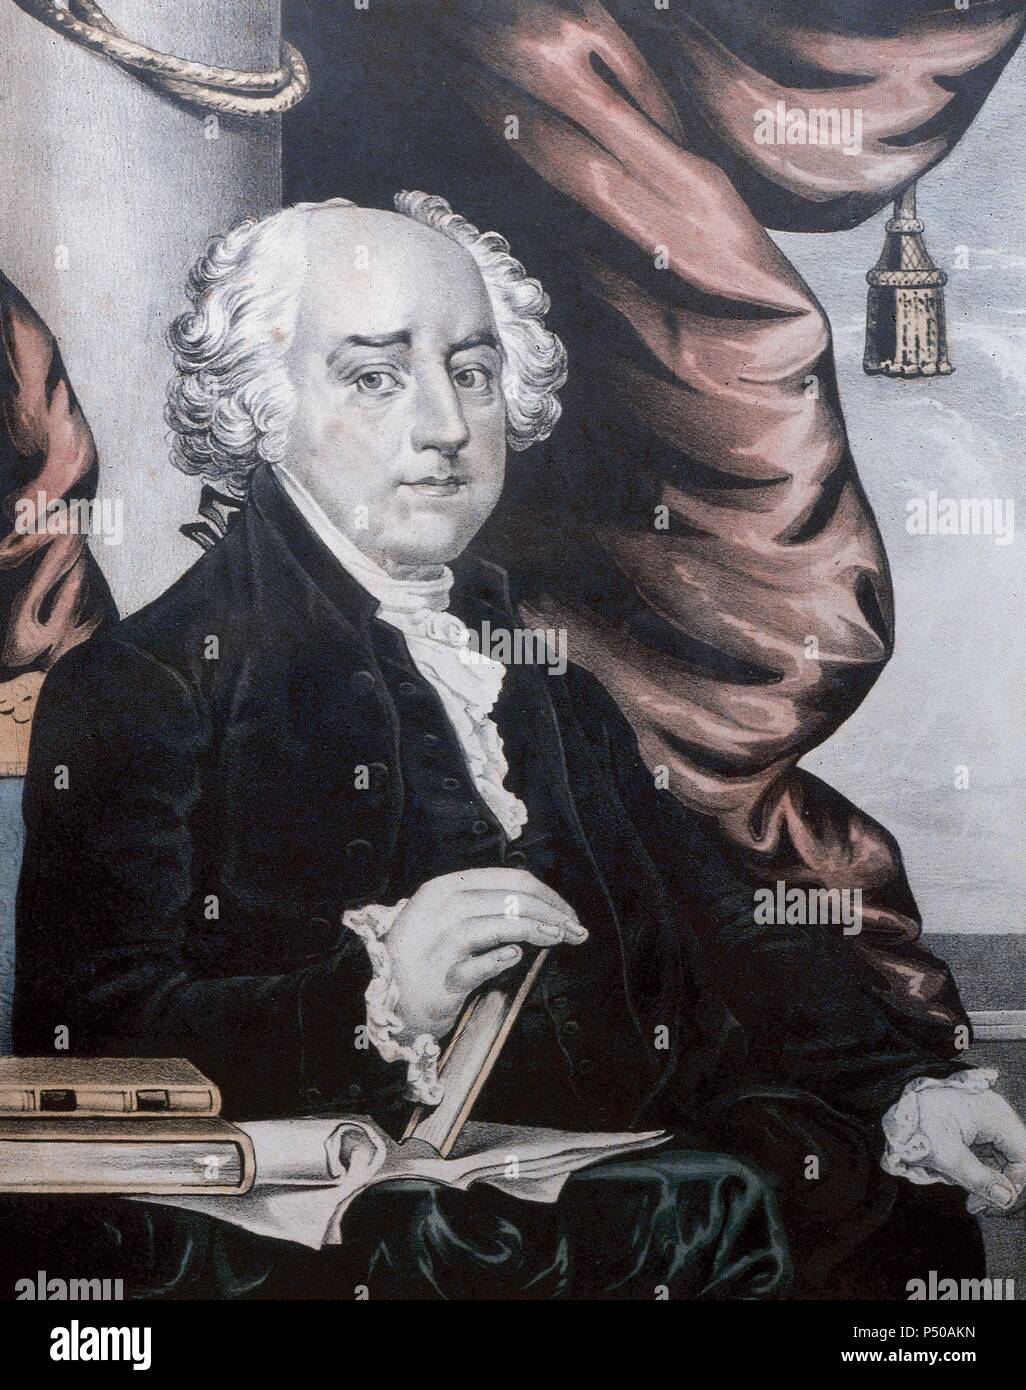 ADAMS, John (1735-1826). Político y diplomático norteamericano. En 1796 fue elegido segundo presidente de los Estados Unidos. Su mandato duró de 1796 hasta el año 1800. Stock Photo